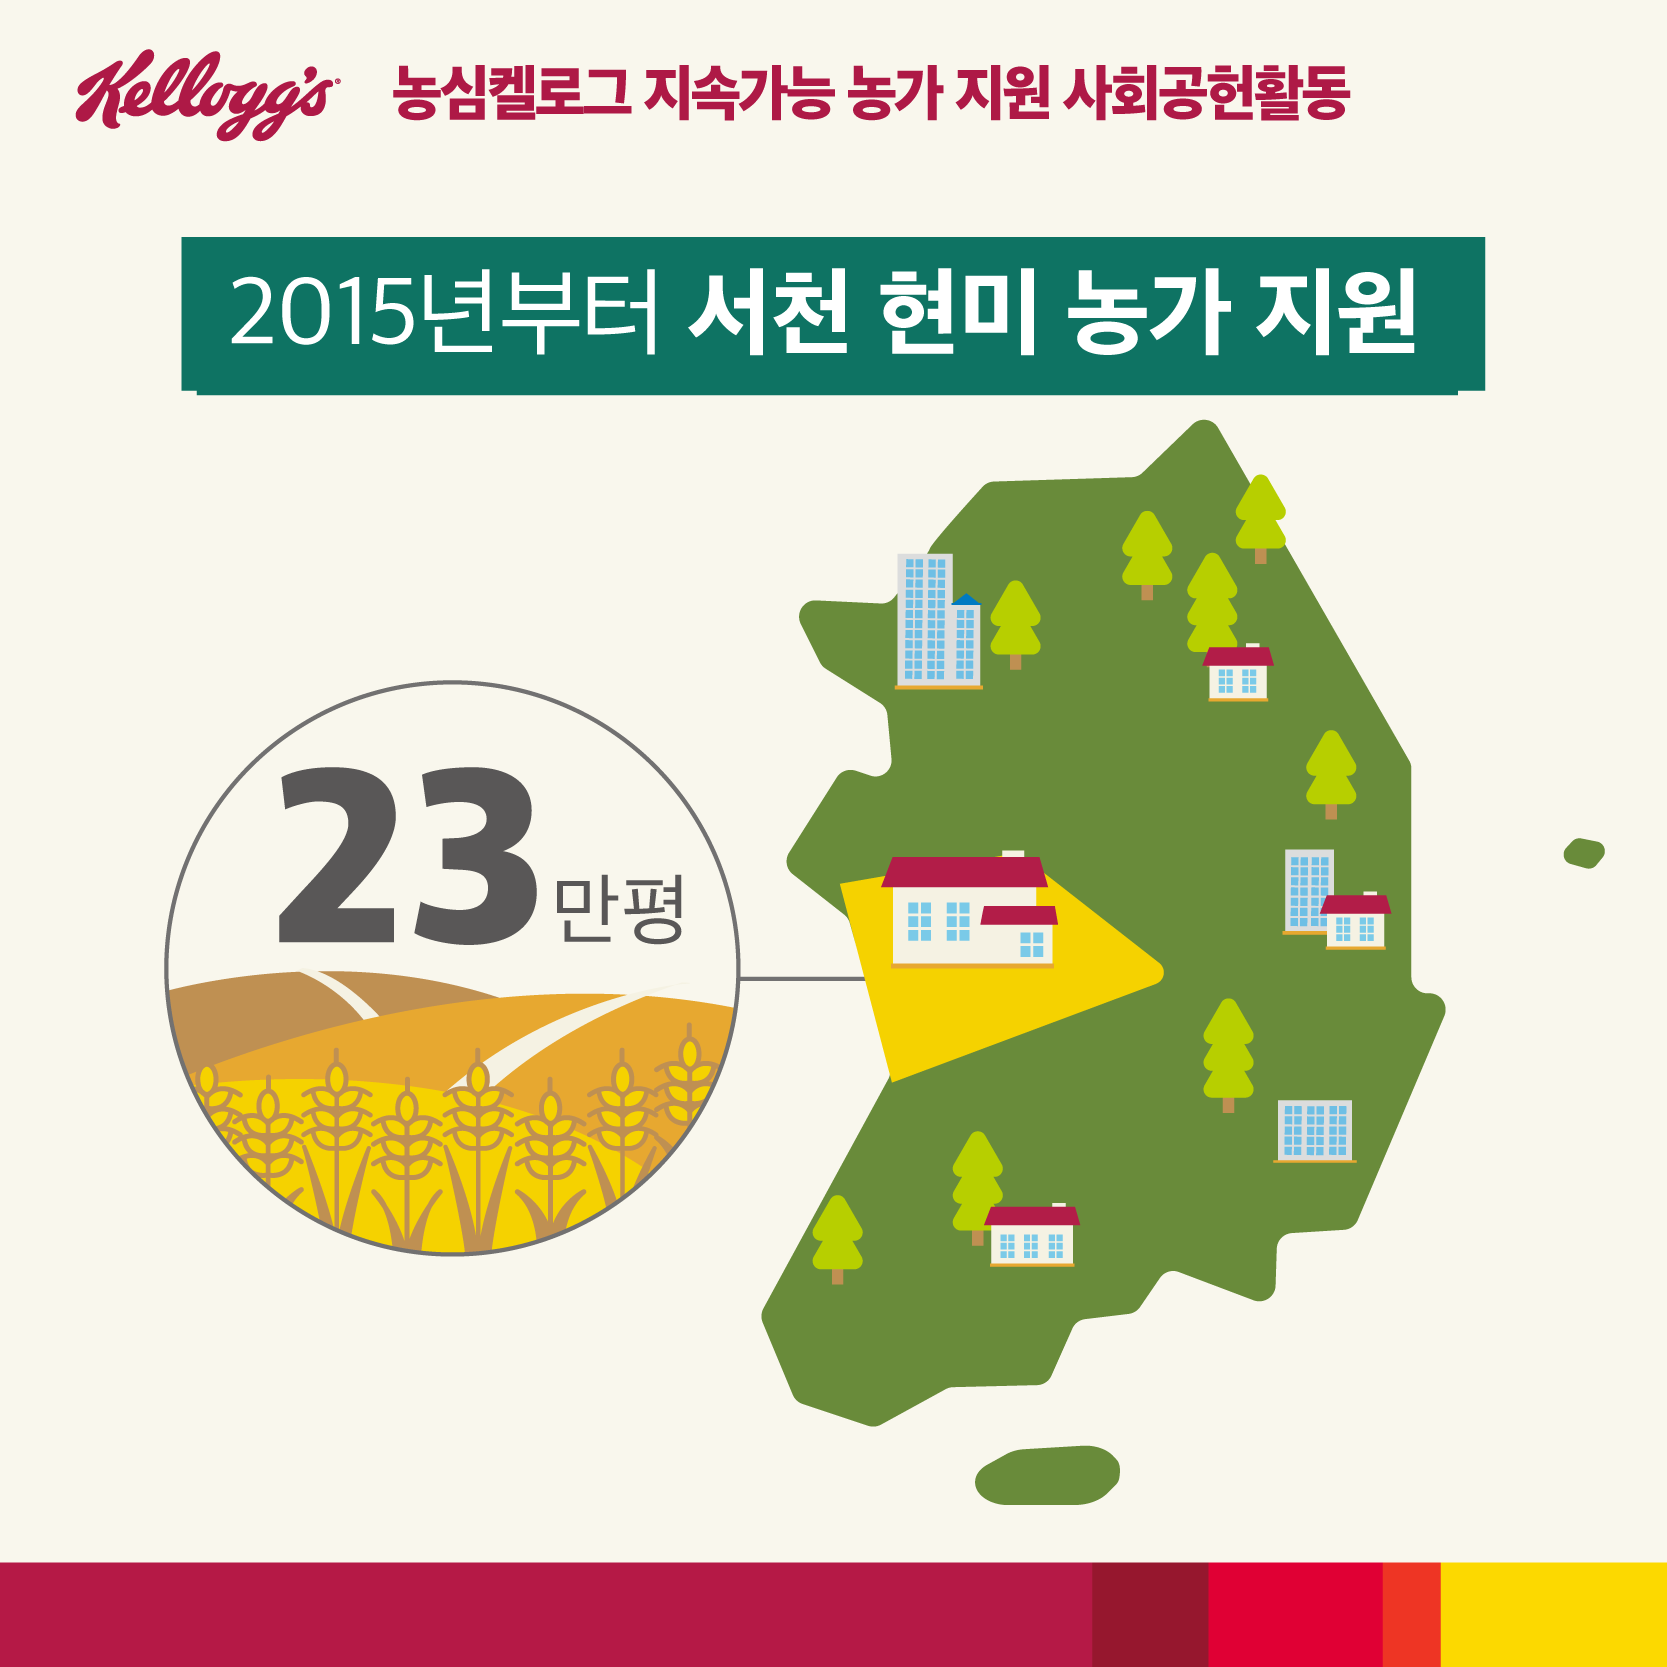 농심 켈로그 지속가능 농가 지원 사회공헌활동 - 2015년부터 서천 현미 농가 지원 23만평